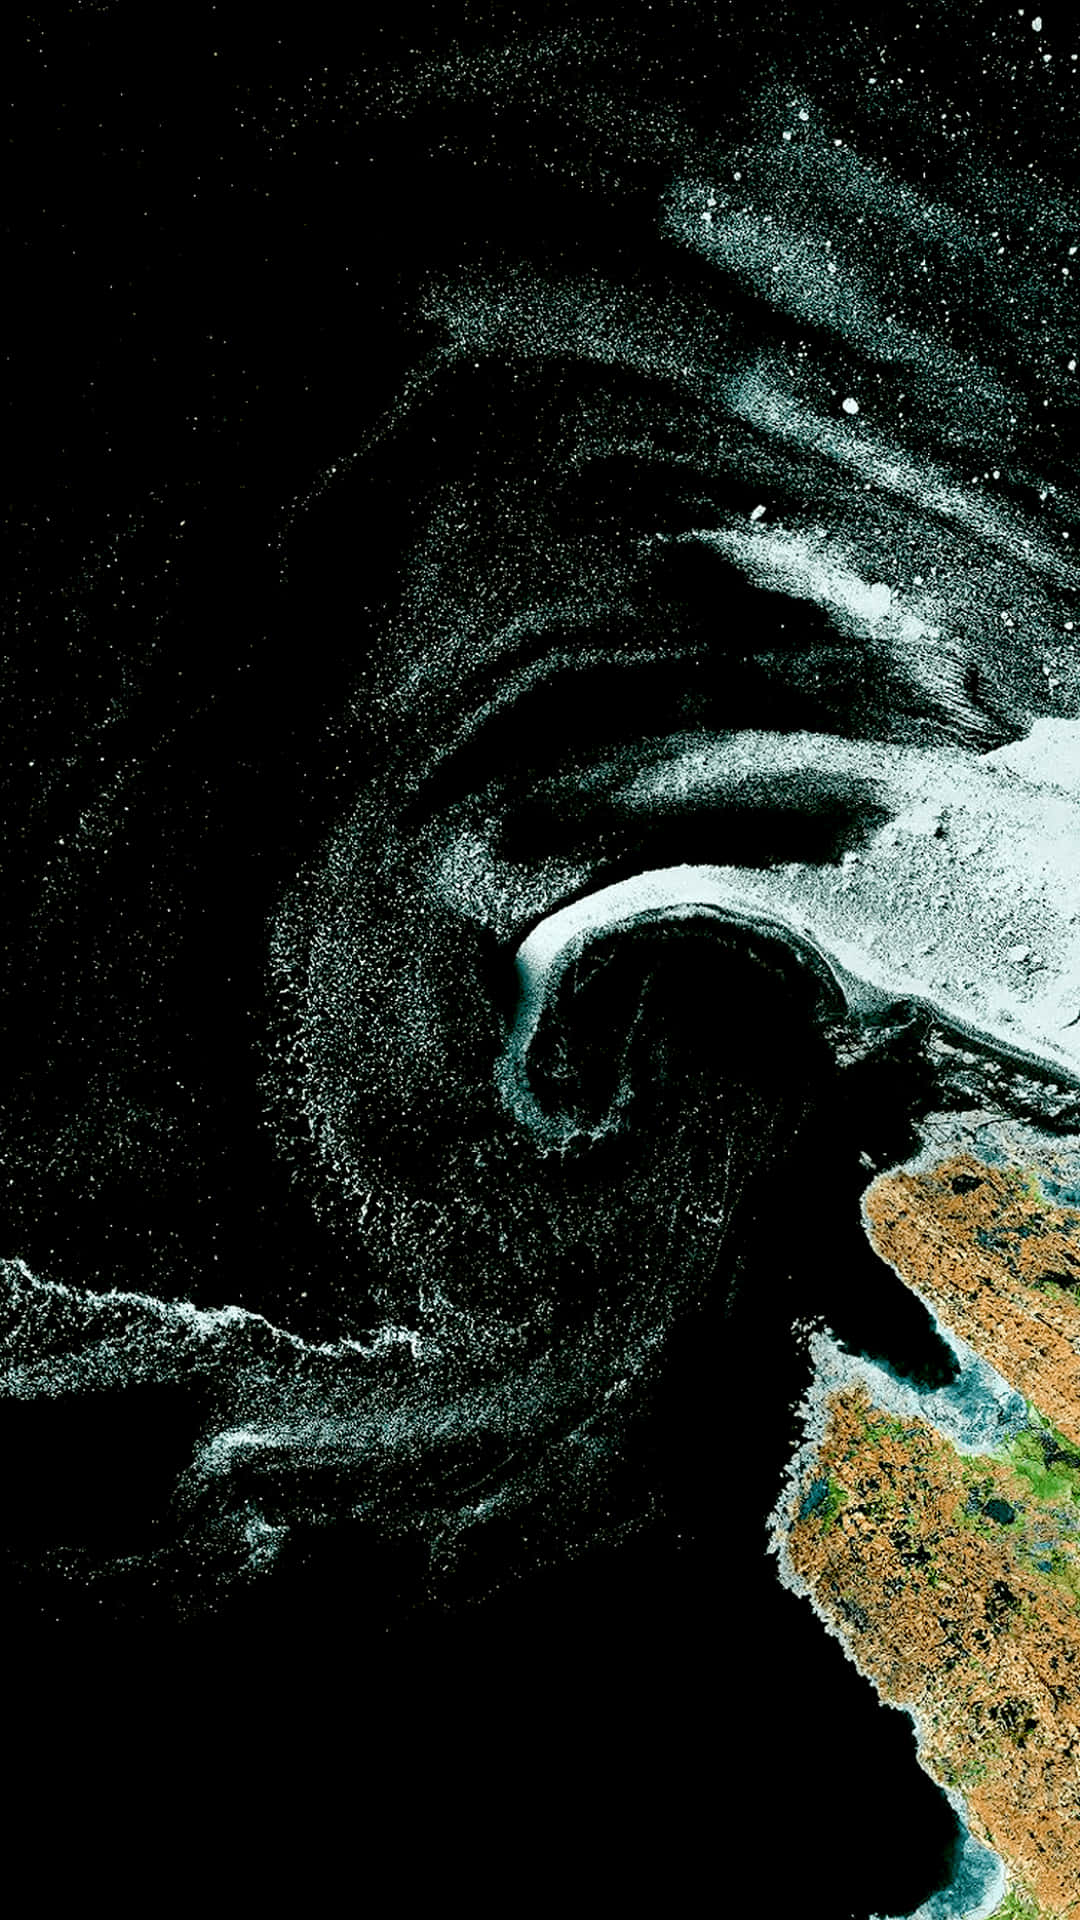 Etsatellitbillede Af En Stor Bølge.